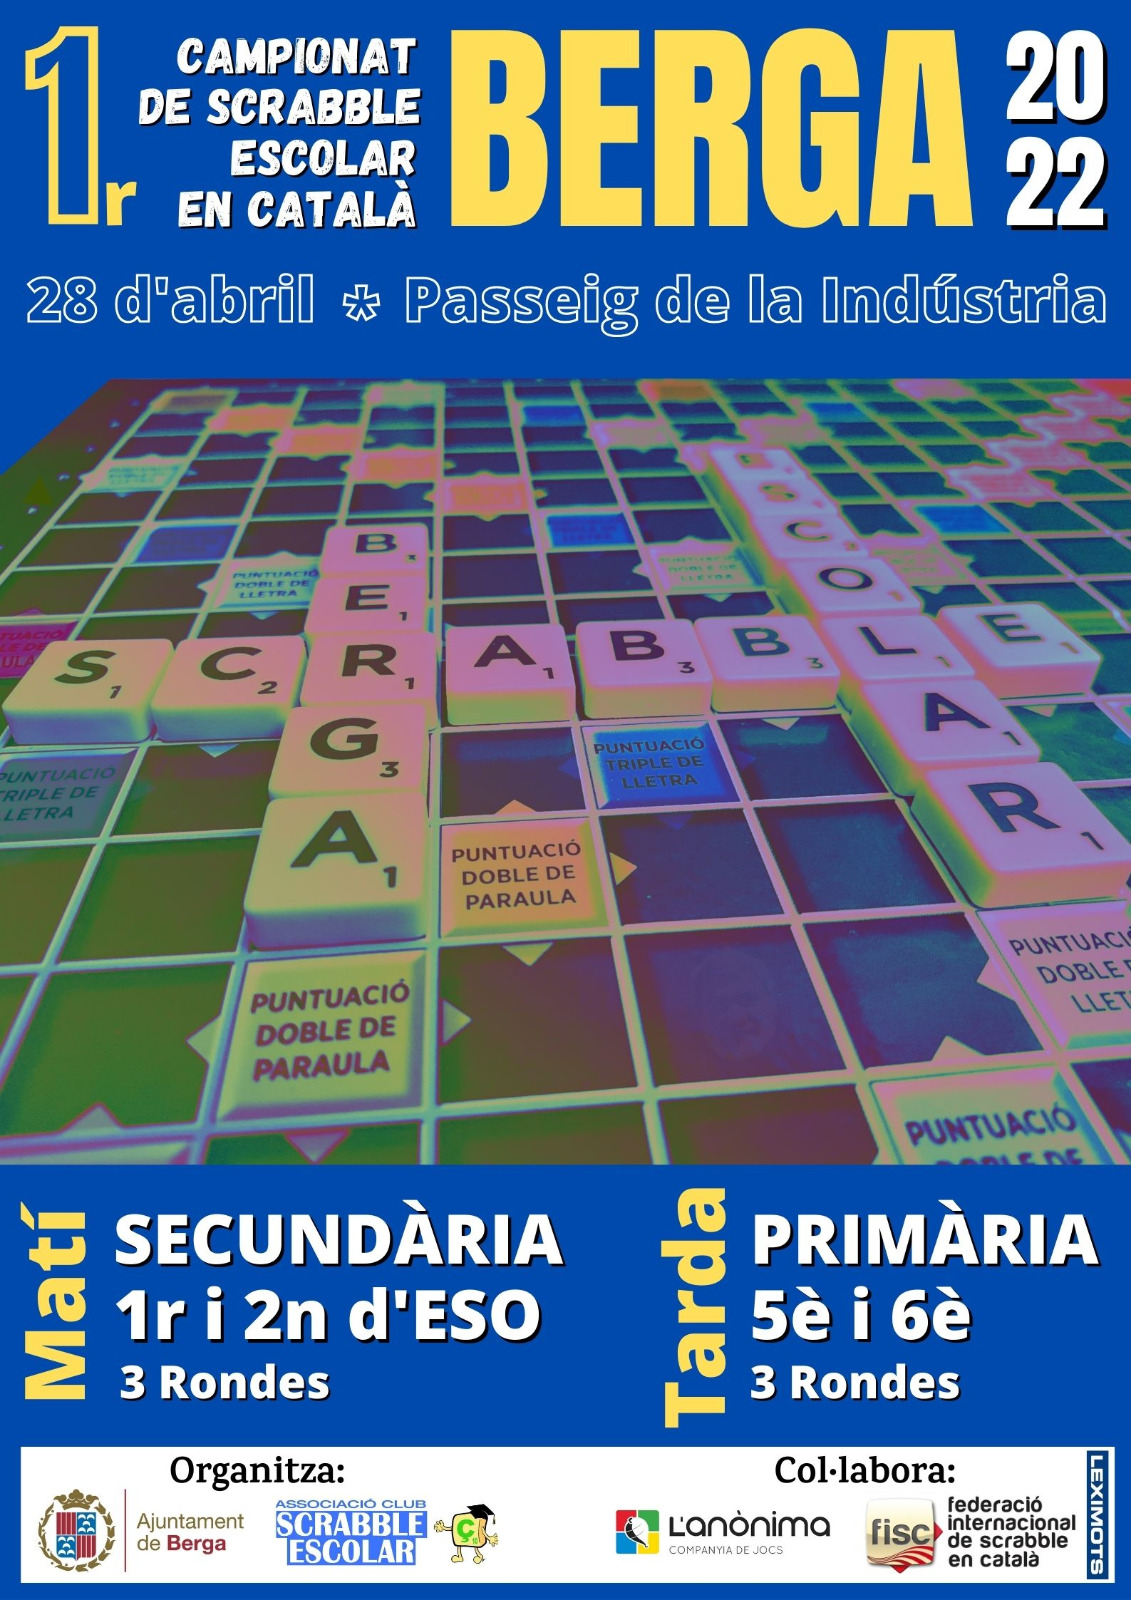 1r. Campionat de Scrabble Escolar en Català de Berga